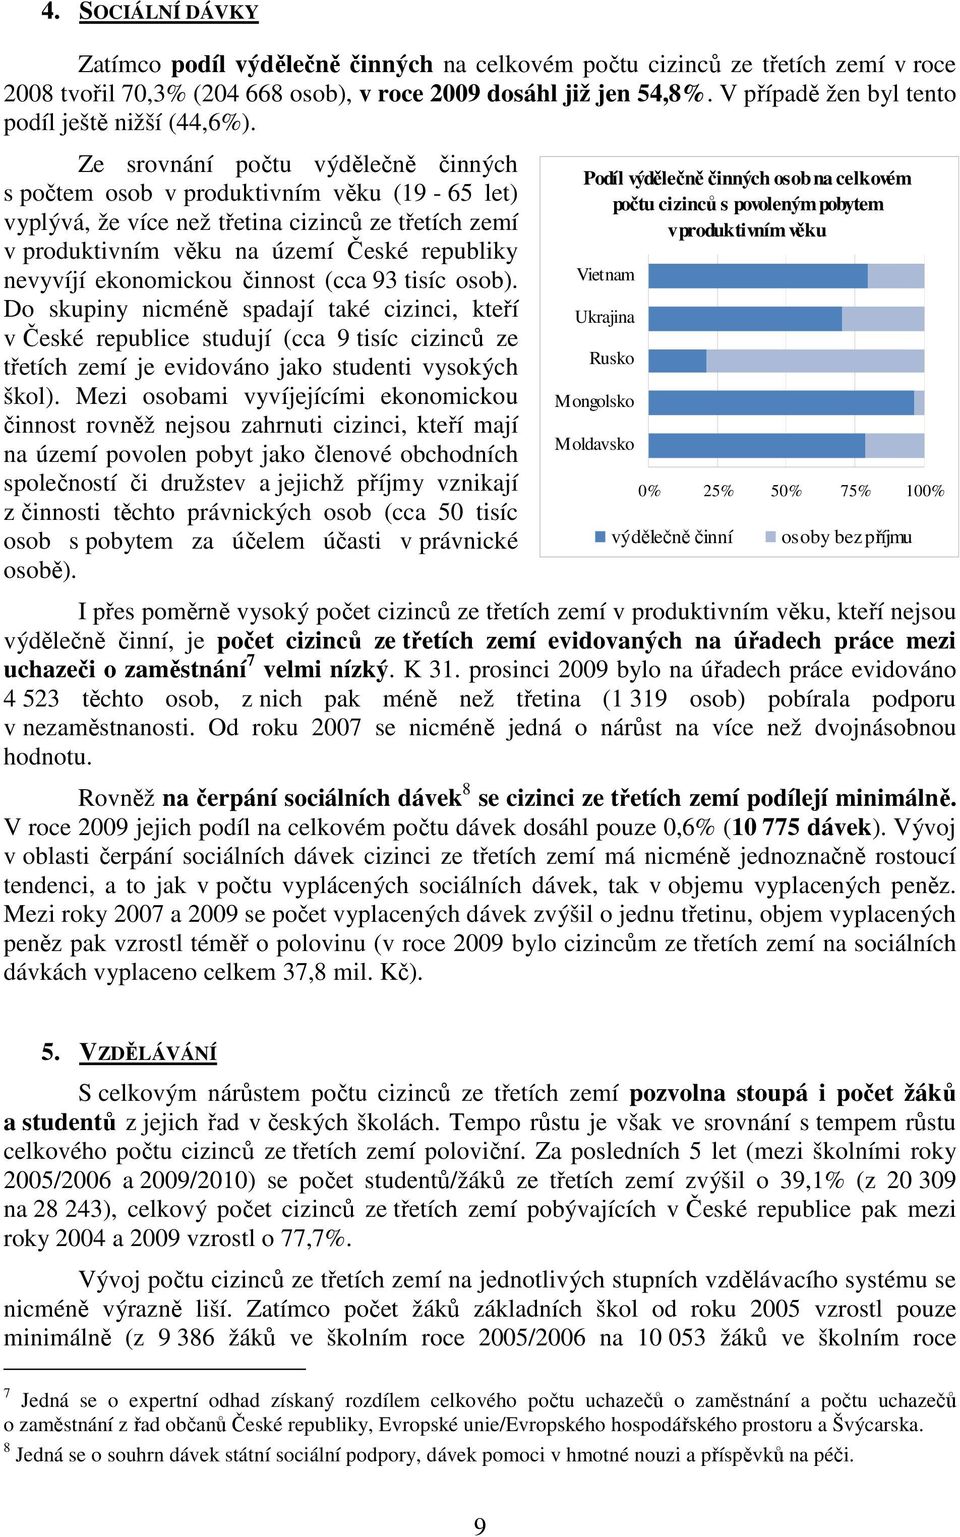 Ze srovnání počtu výdělečně činných s počtem osob v produktivním věku (19-65 let) vyplývá, že více než třetina cizinců ze třetích zemí v produktivním věku na území České republiky nevyvíjí